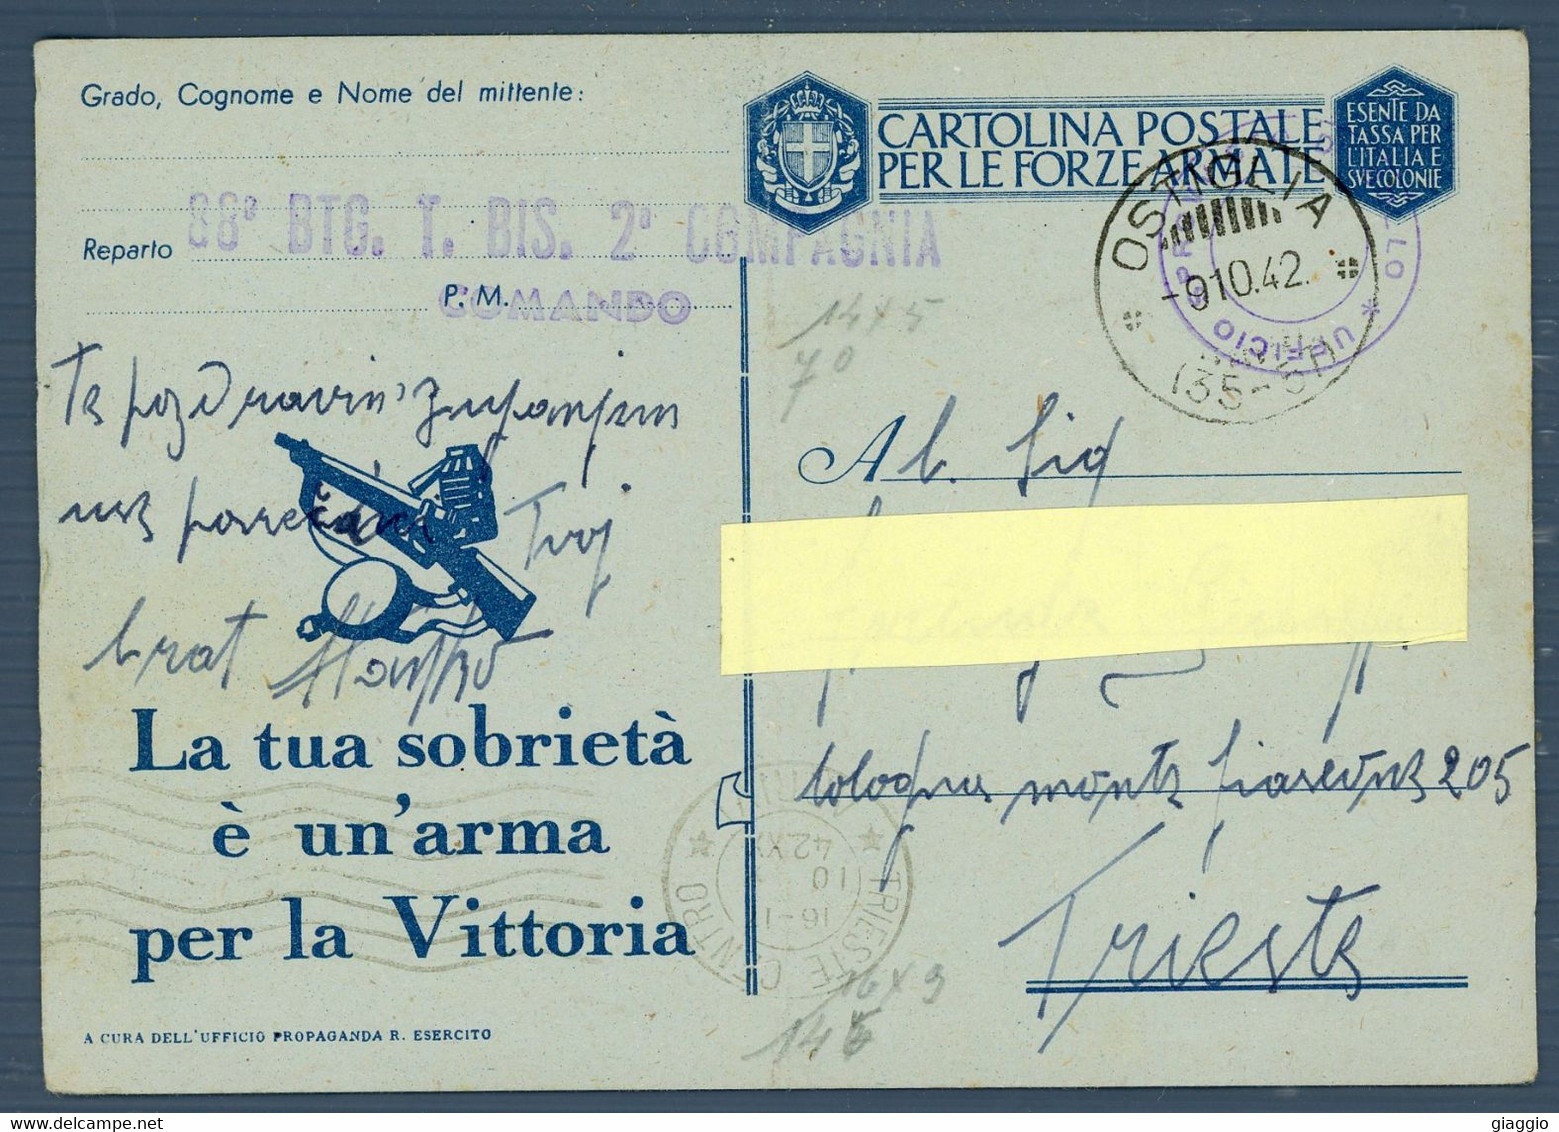 °°° Cartolina Postale N. 4944 - Per Le Forze Armate °°° - 1939-45